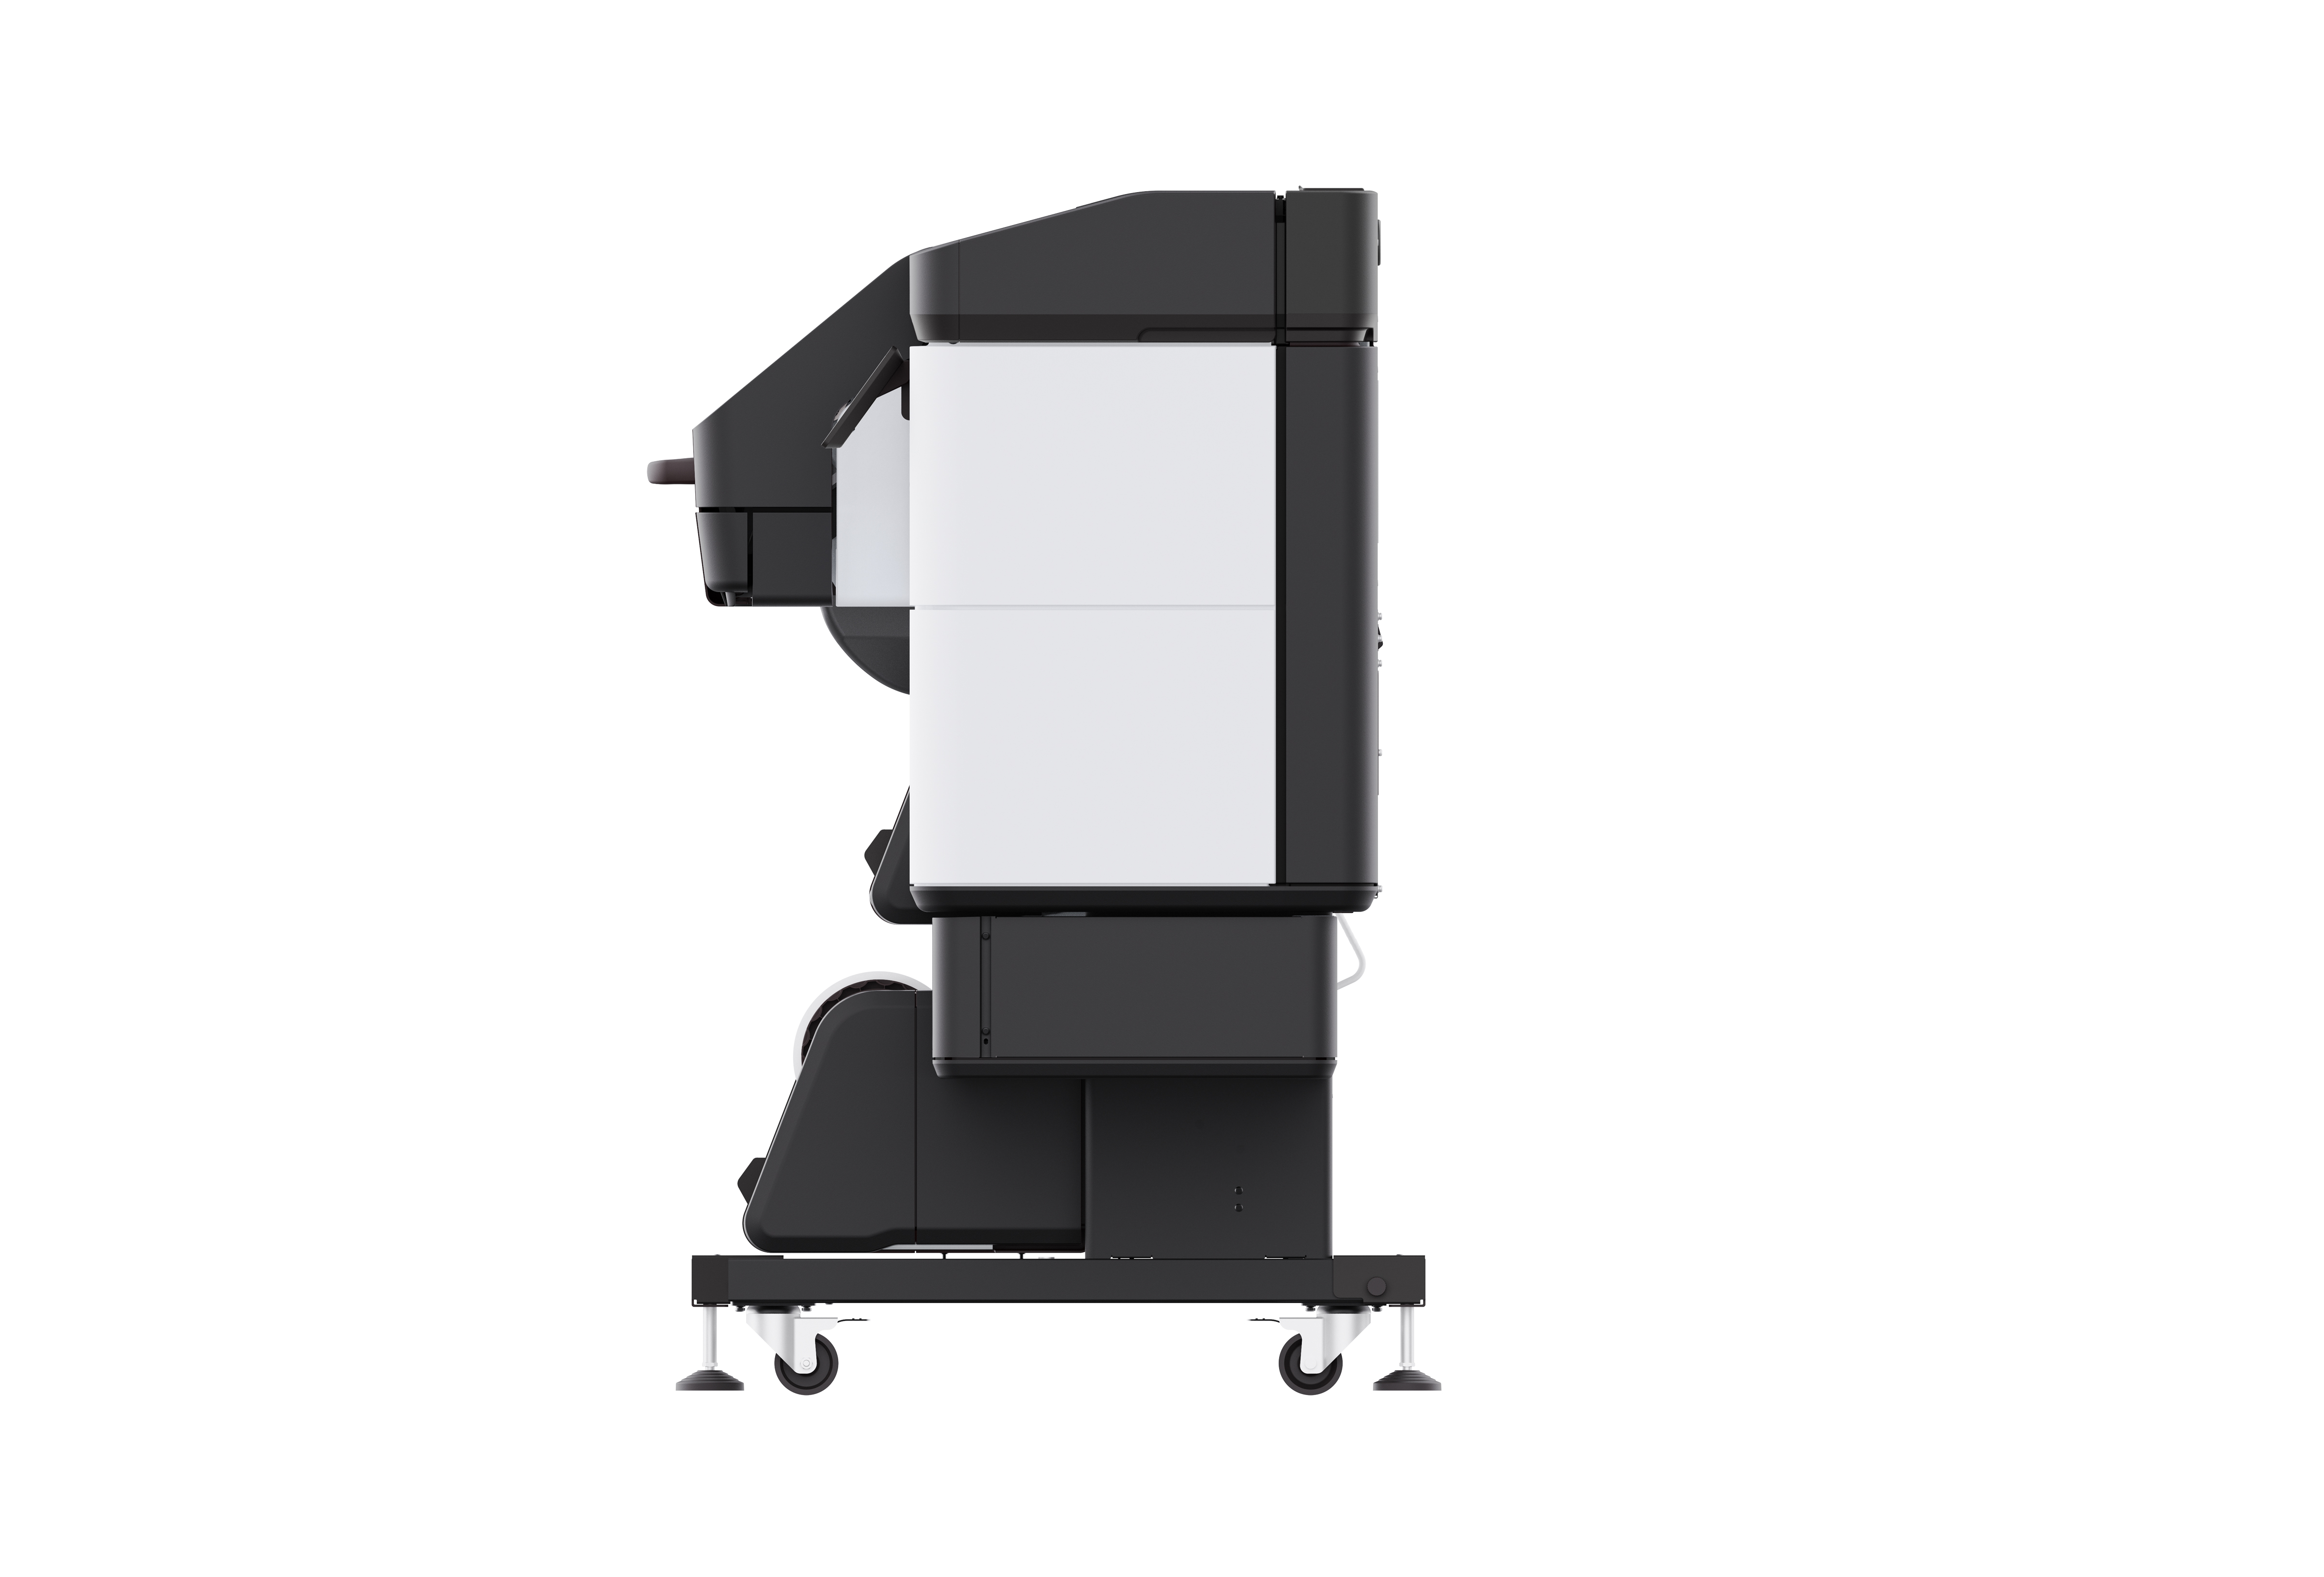 HP Latex 700/800 Series Printers